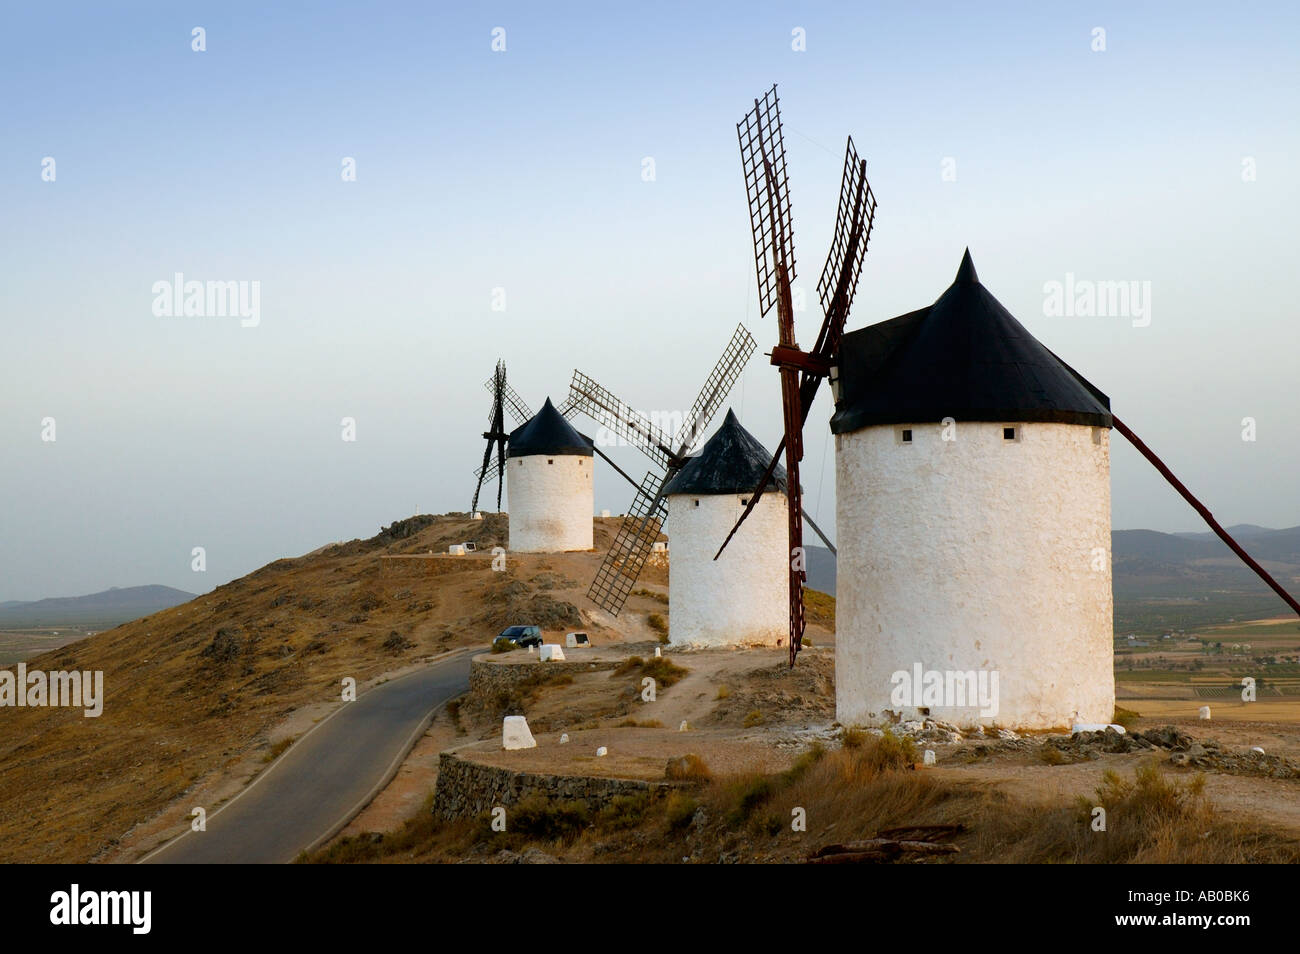 Europe Spain Castilla La Mancha Toledo Province Consuegra Windmills on Ruta del Quijote Tourist Route of Don Quijote Stock Photo